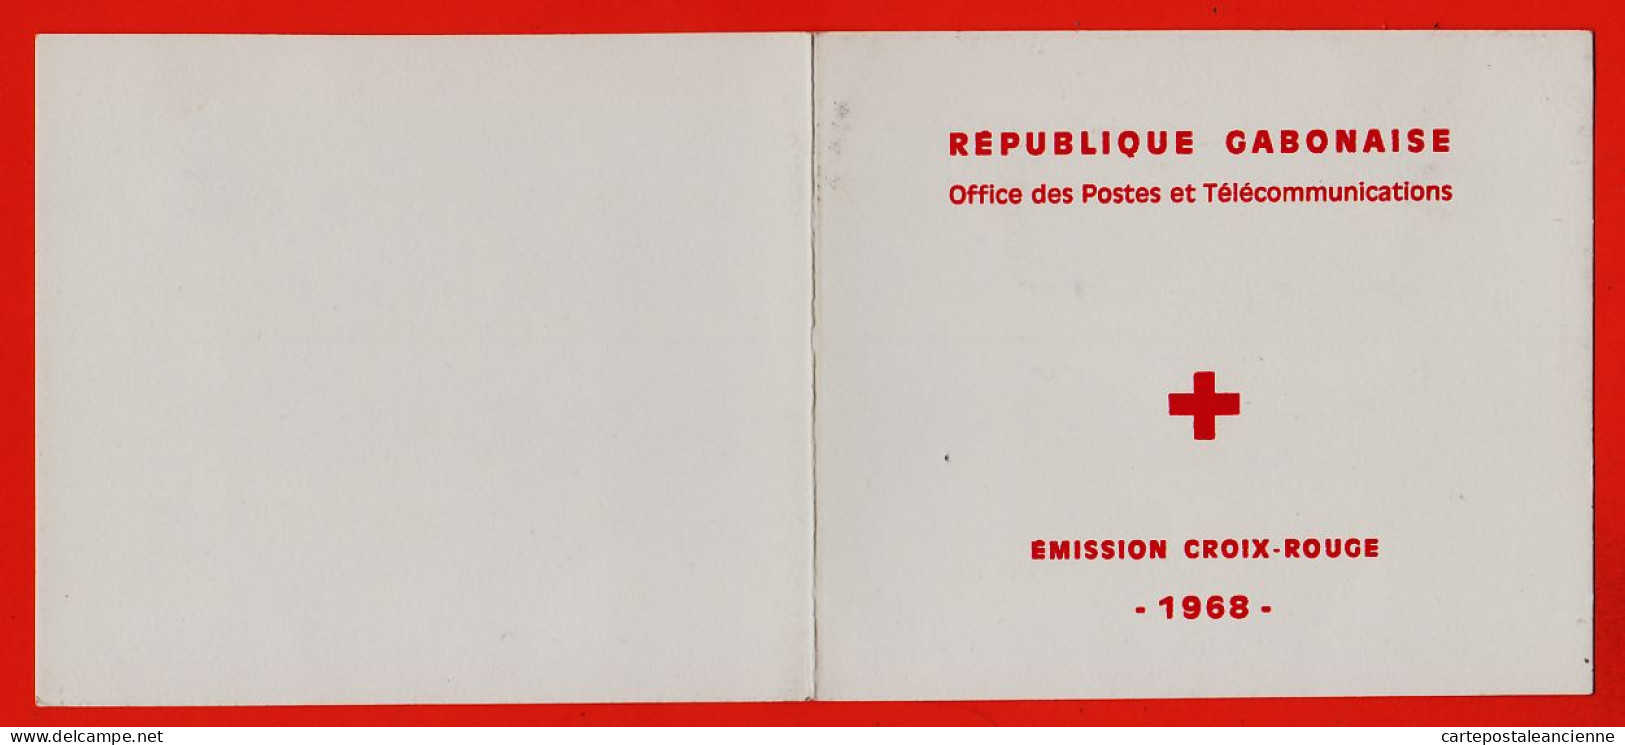 16518 / Republique GABON Carnet Bloc 4 Timbres Yvert Tellier Y-T N°14 Vème Anniversaire CROIX ROUGE 1969 LUXE MNH** - Gabon (1960-...)